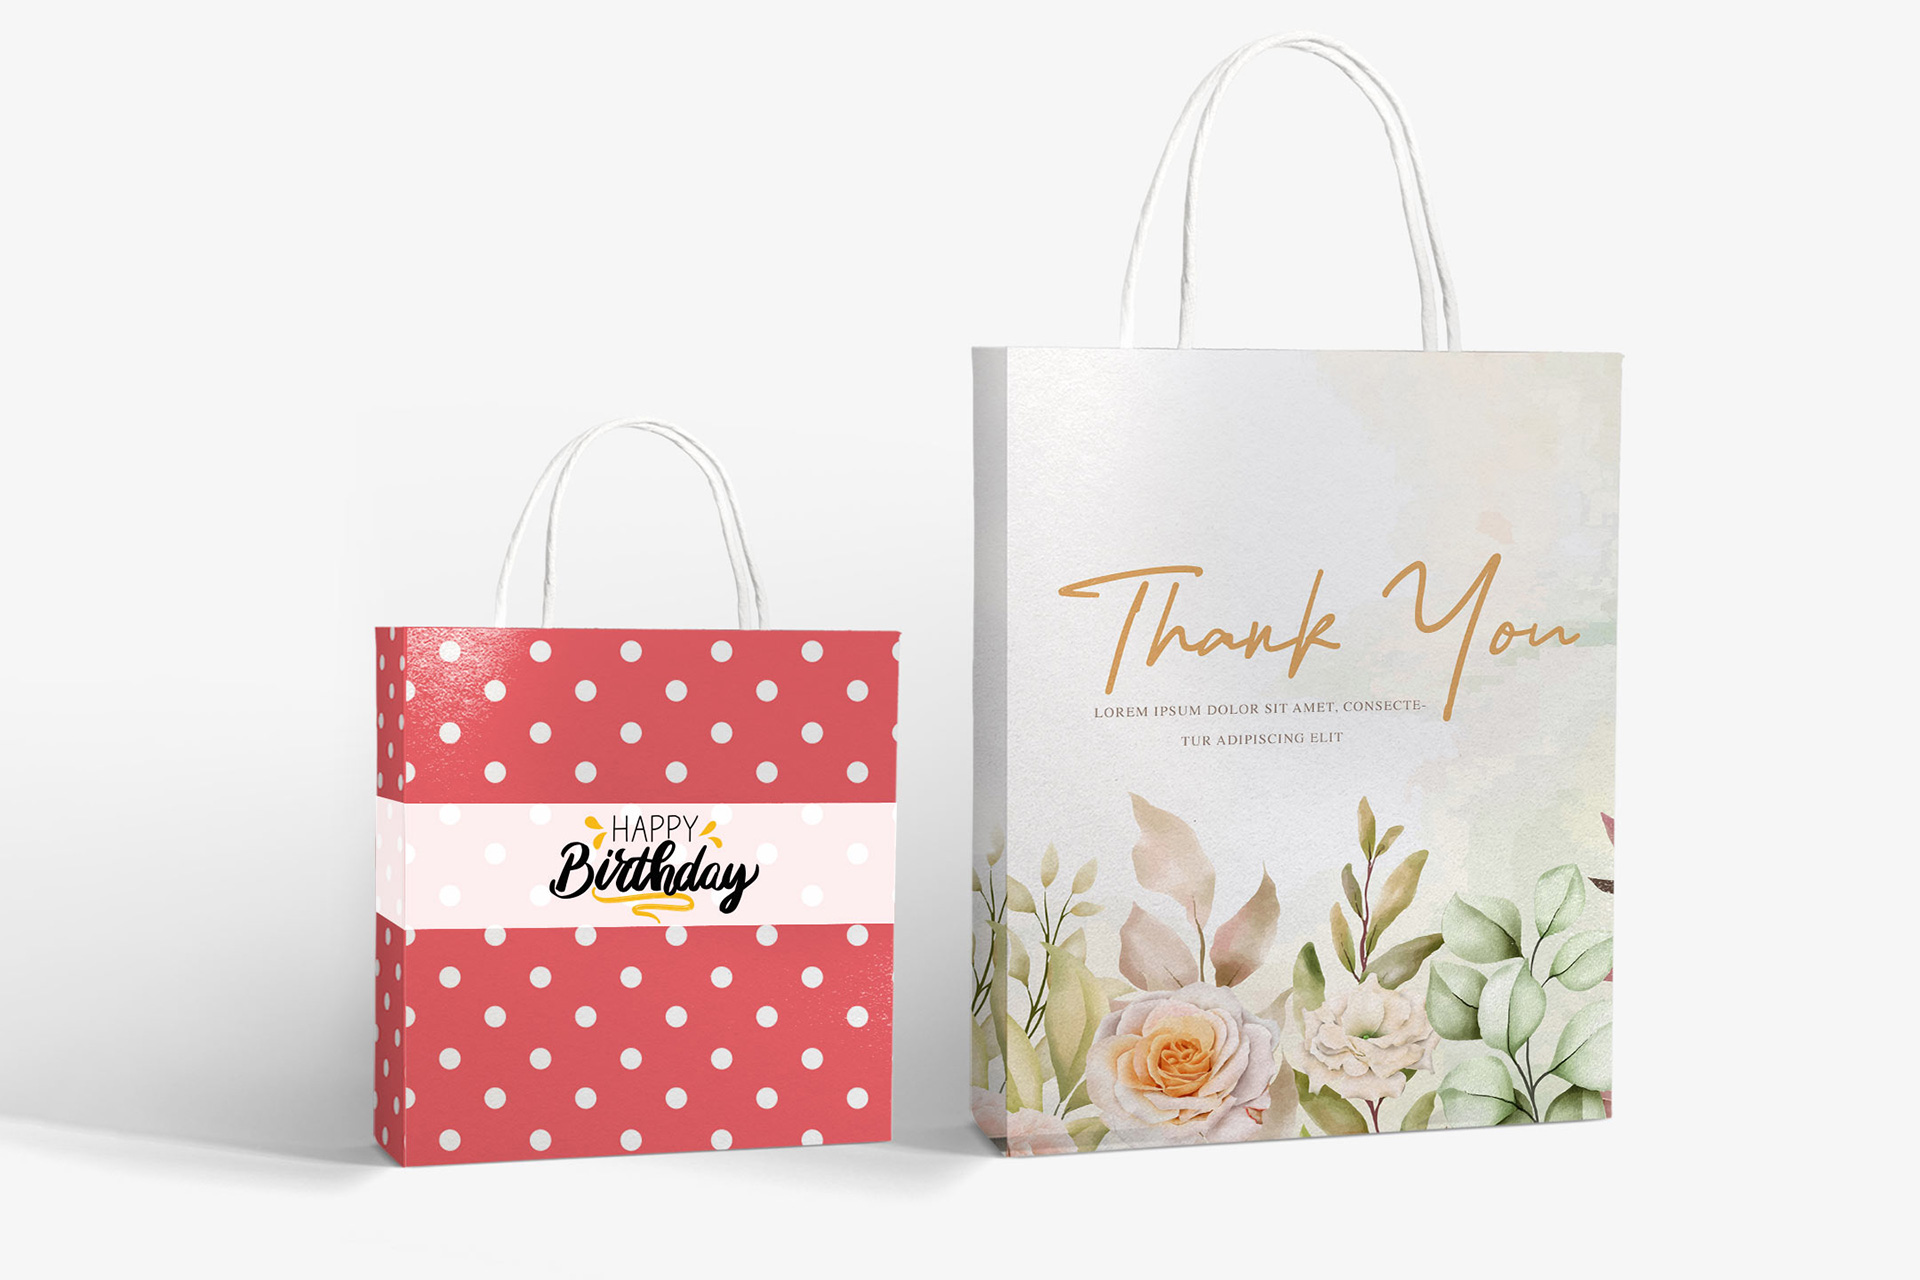 Velvet Candy Pumpkin Bag | Velvet Wrapping Decor | Christmas Gift Bag |  Velvet Treat Bags - Gift Boxes & Bags - Aliexpress